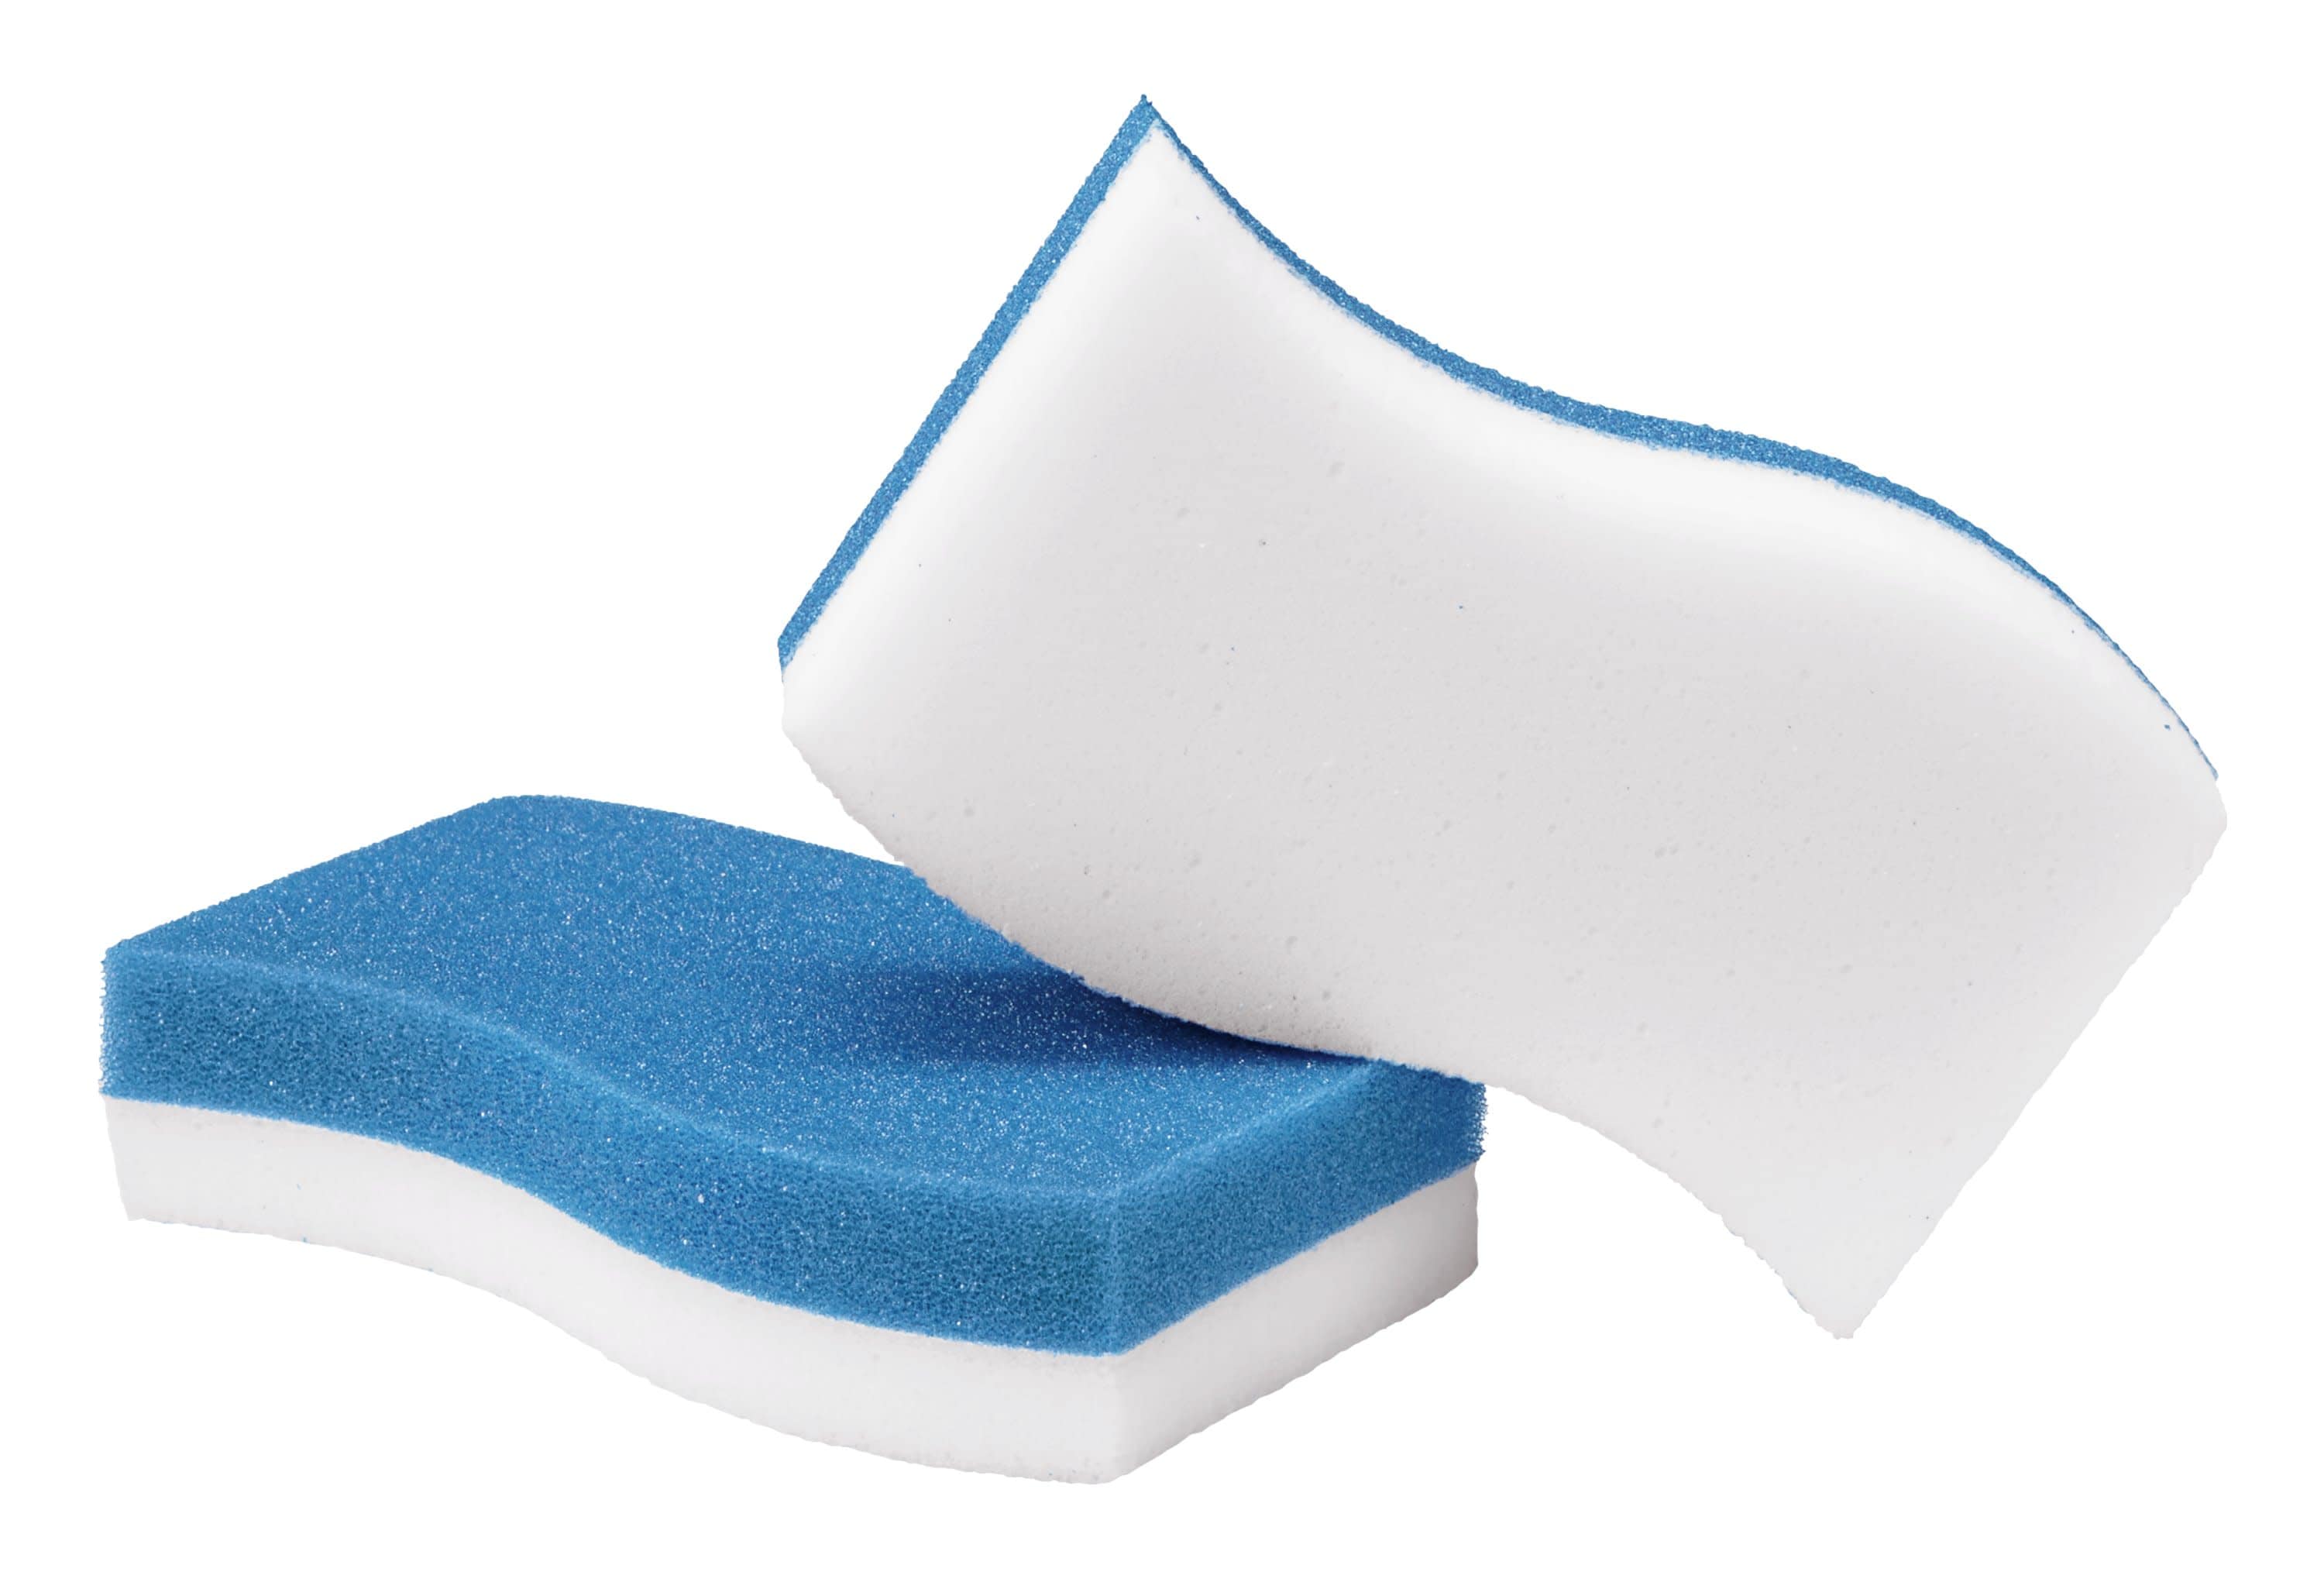 Hãy khám phá chất liệu Bông tắm Scotch-Brite Melamine Scouring Pad 2-Pack trong Sponges để làm sạch hiệu quả hơn. Với bảo vệ bề mặt của đồ dùng gia đình, bạn sẽ không còn phải lo sợ trầy xước hoặc hư hỏng. Hãy xem hình ảnh để có cái nhìn toàn diện hơn về sản phẩm này.